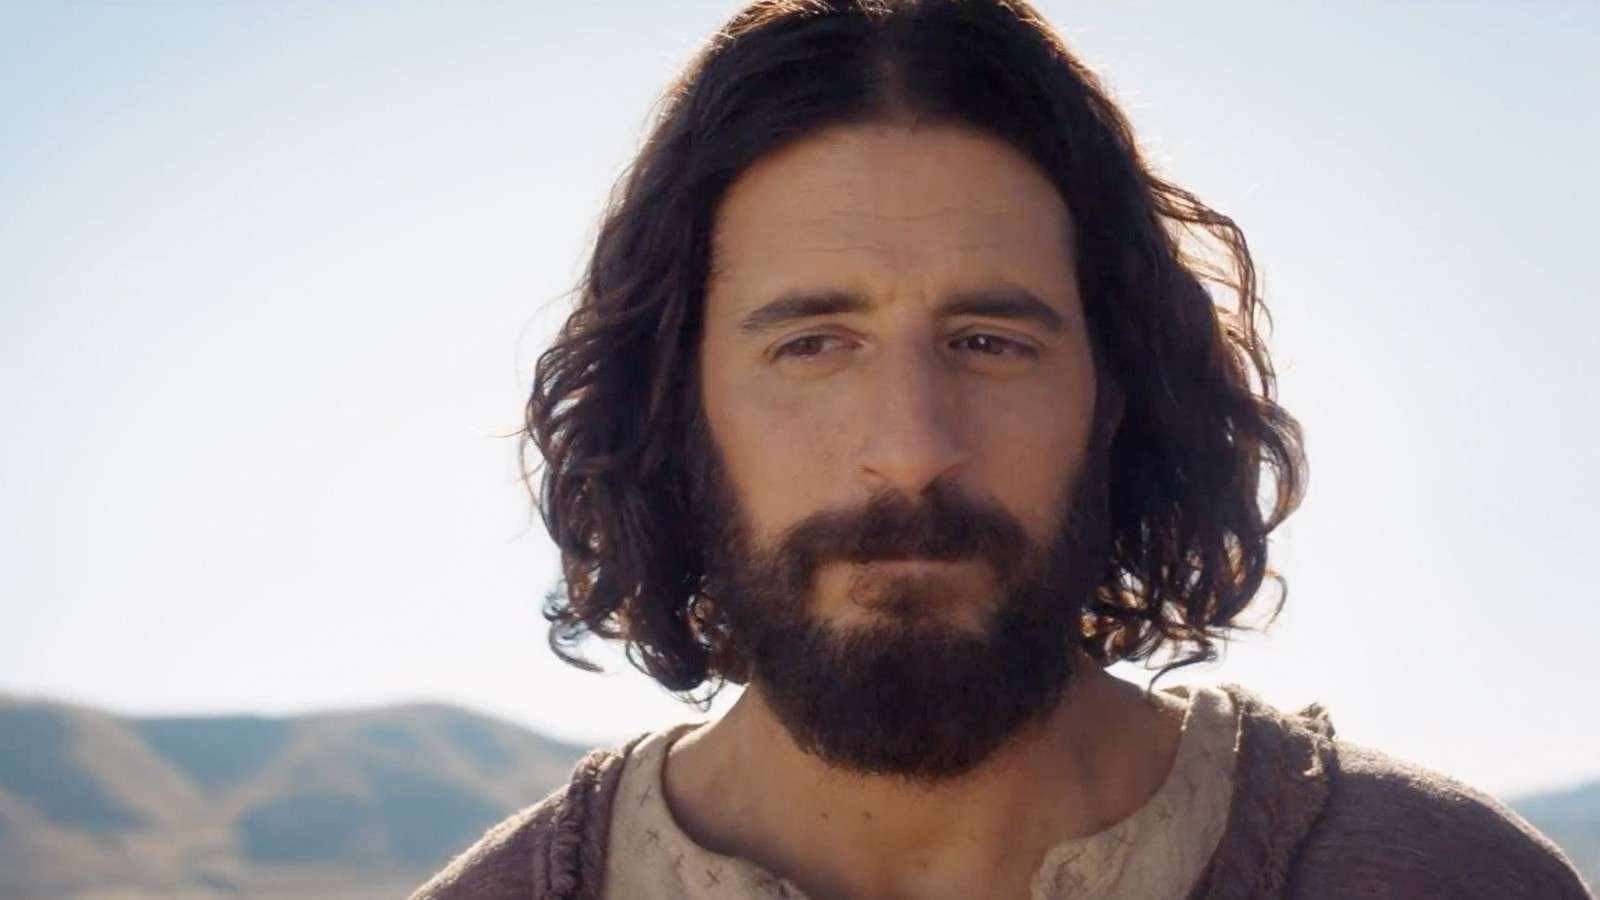 Jonathan Roumie as Jesus